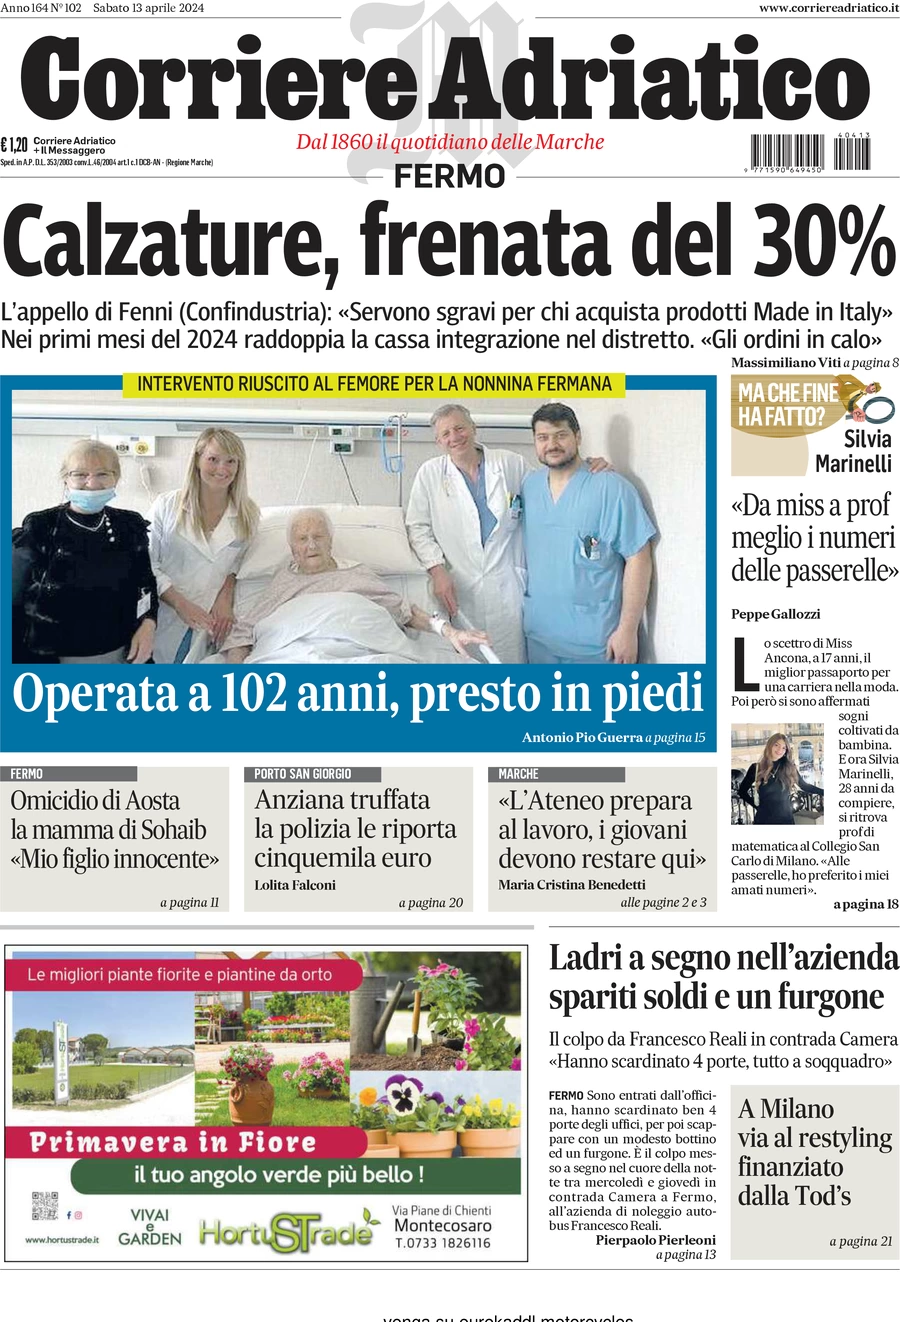 anteprima della prima pagina di corriere-adriatico-fermo del 13/04/2024